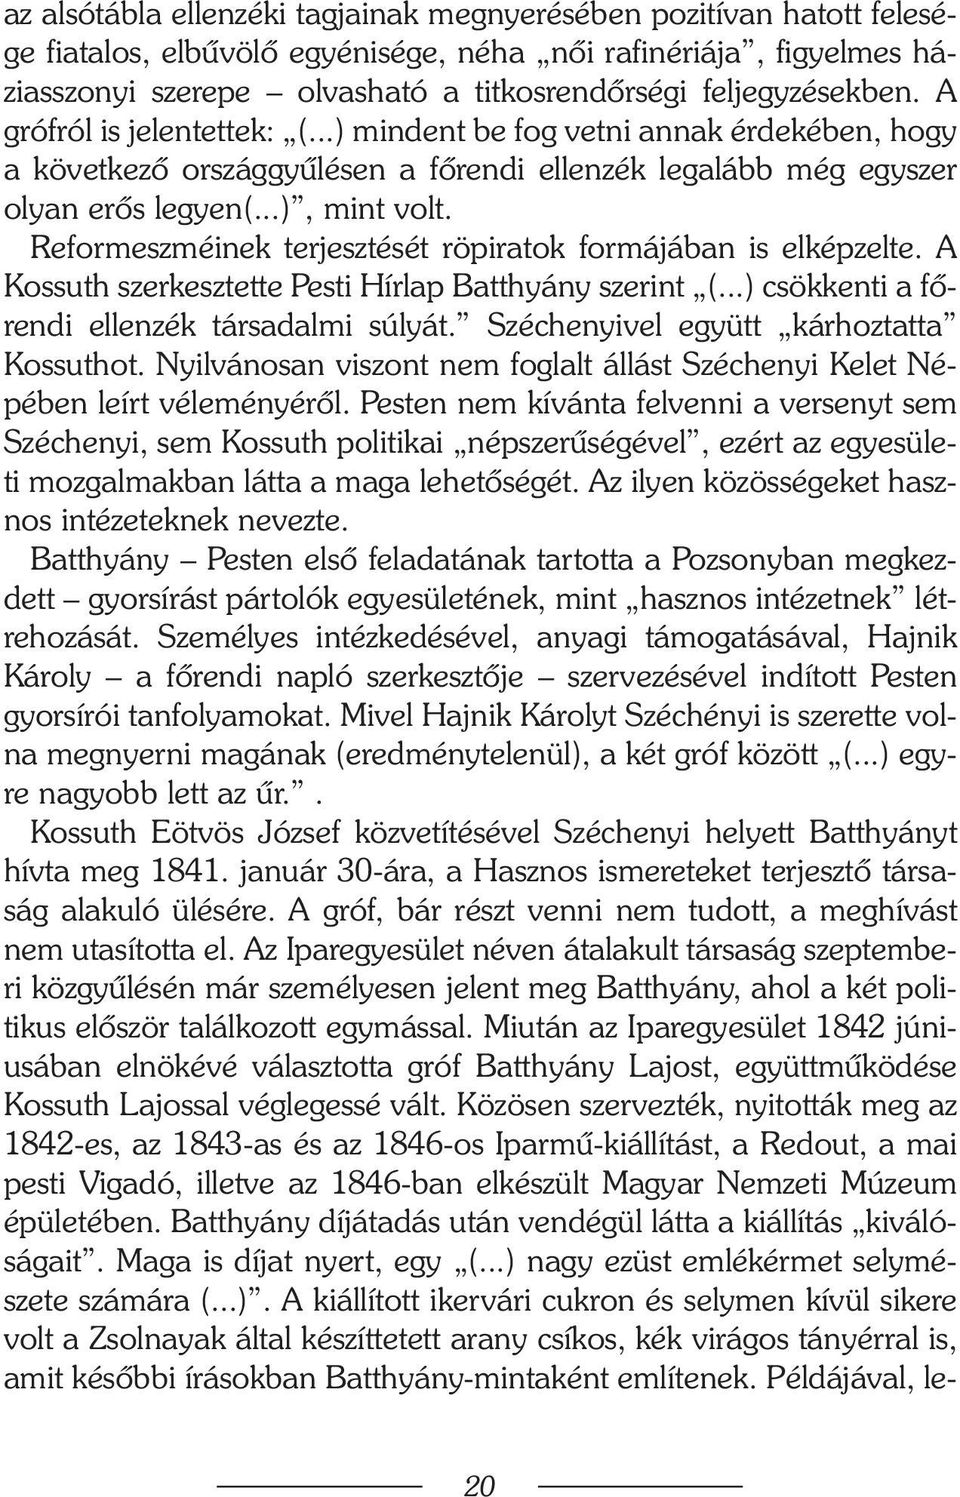 Reformeszméinek terjesztését röpiratok formájában is elképzelte. A Kossuth szerkesztette Pesti Hírlap Batthyány szerint (...) csökkenti a fõrendi ellenzék társadalmi súlyát.